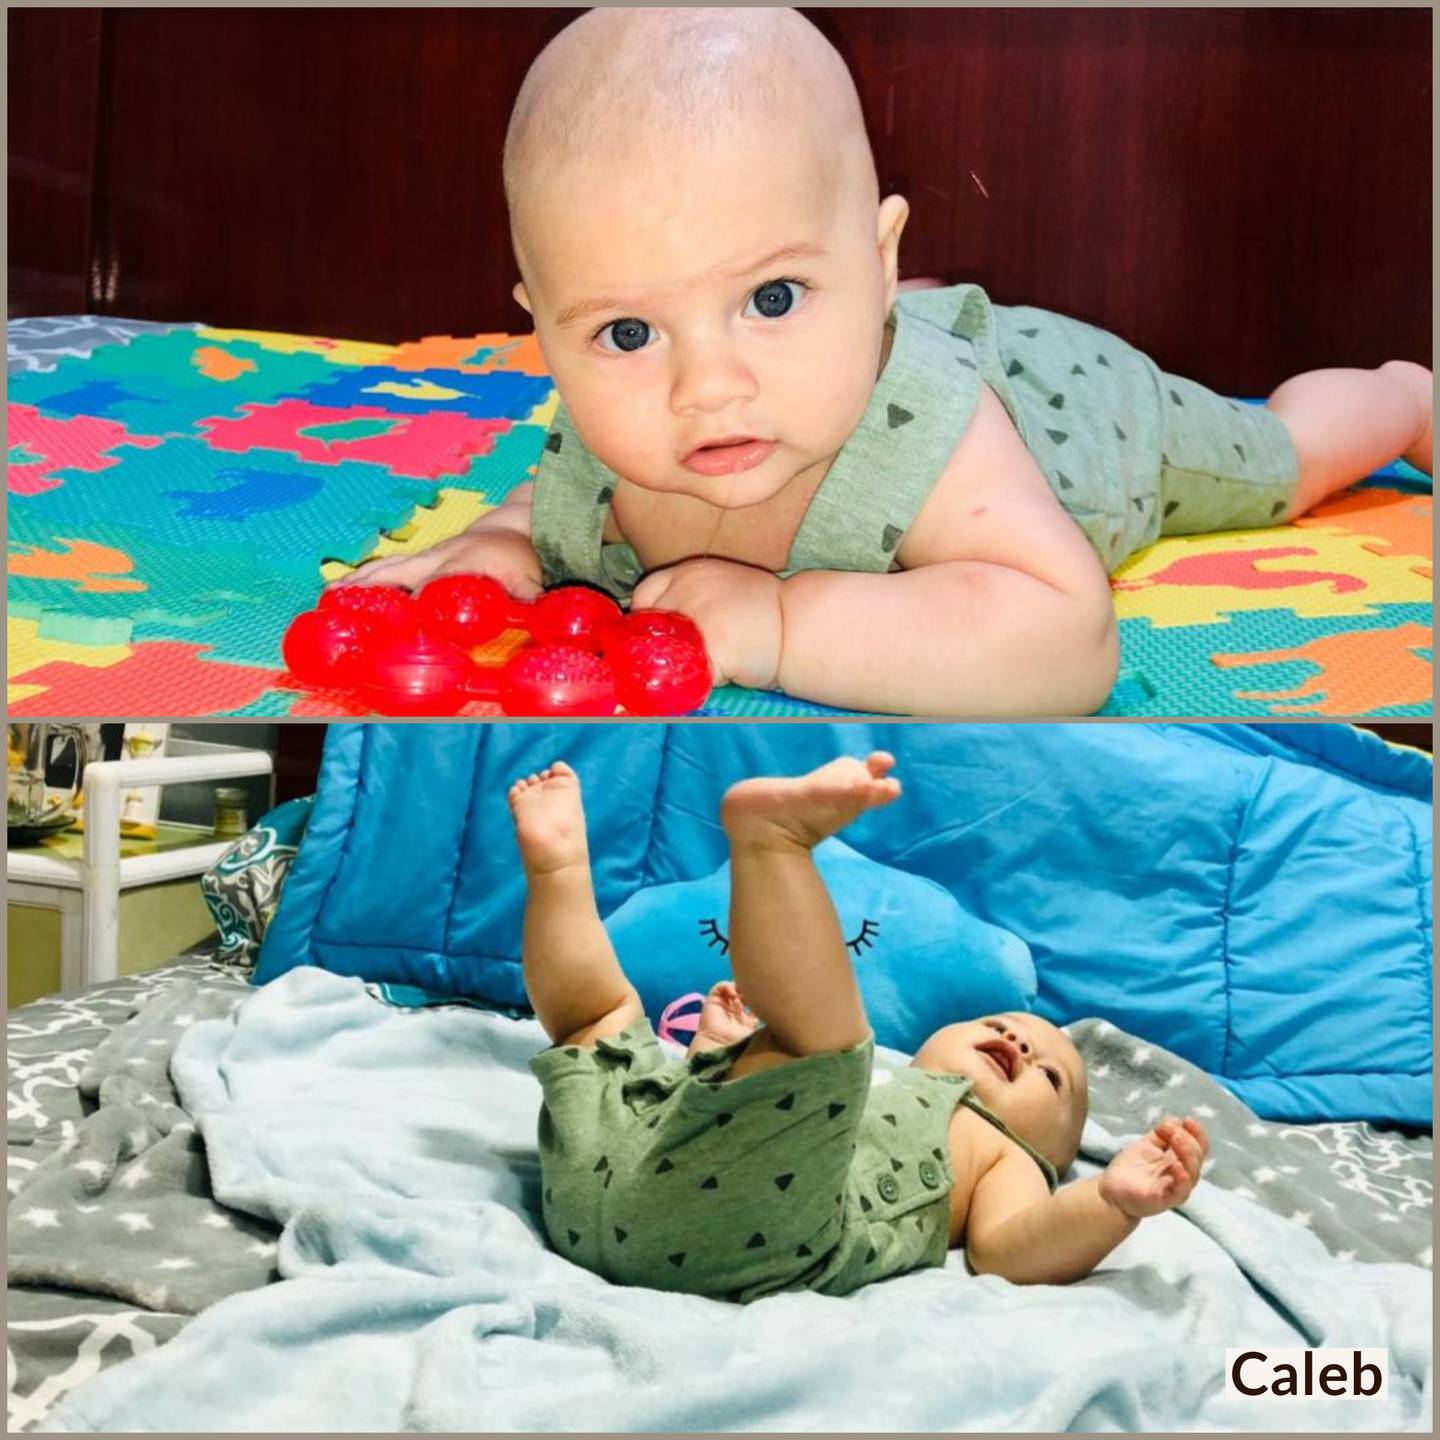 Datos de nacimientos en maternidades de la Caja durante 2019. En la foto Caleb, nació en el 2019.